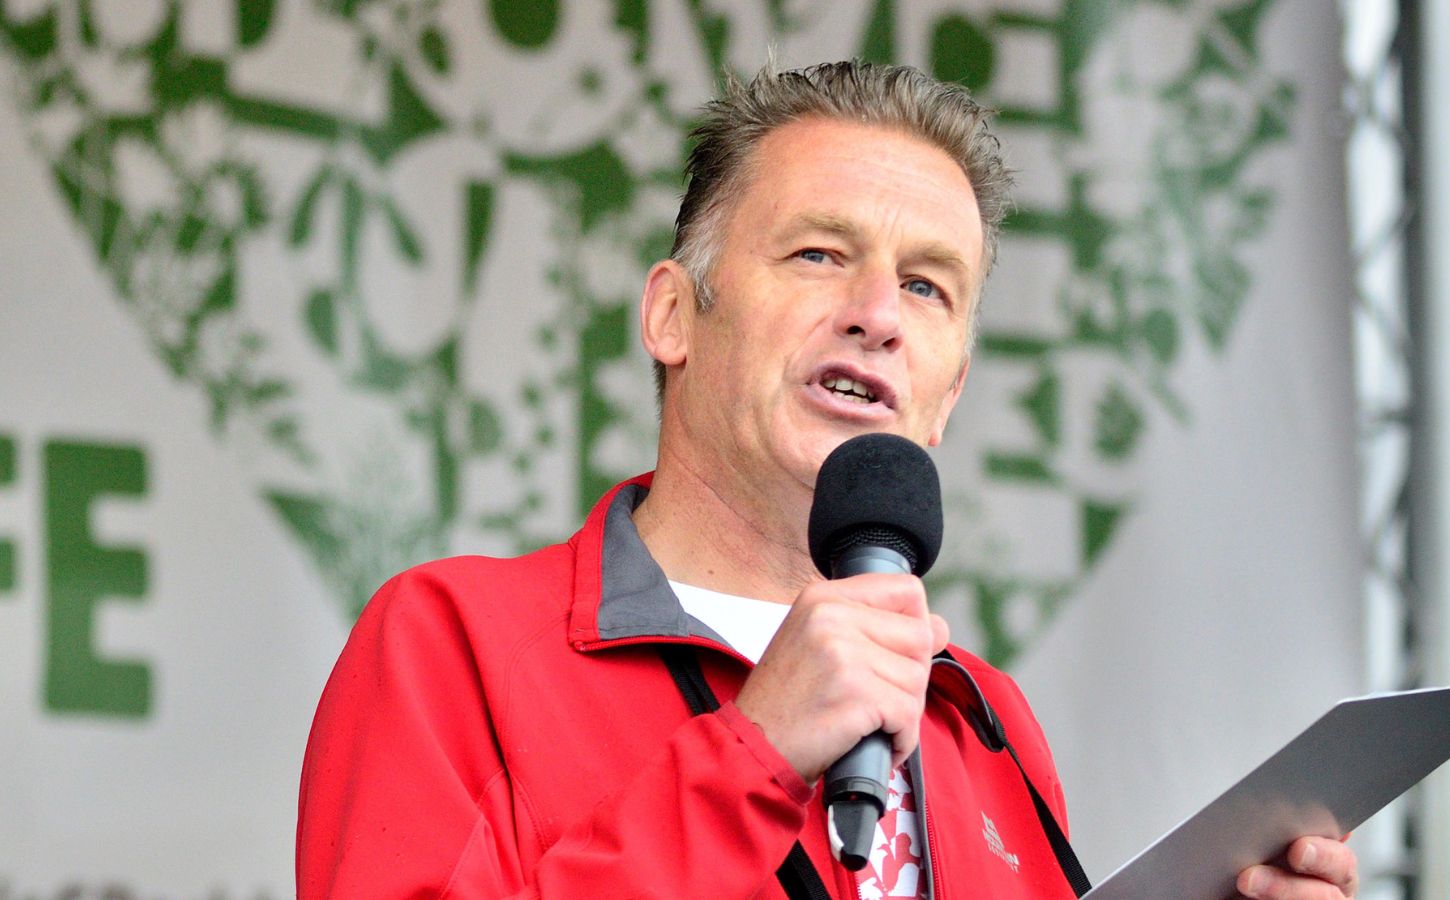 Vegan celebrity Chris Packham giving a speech at an outdoor event